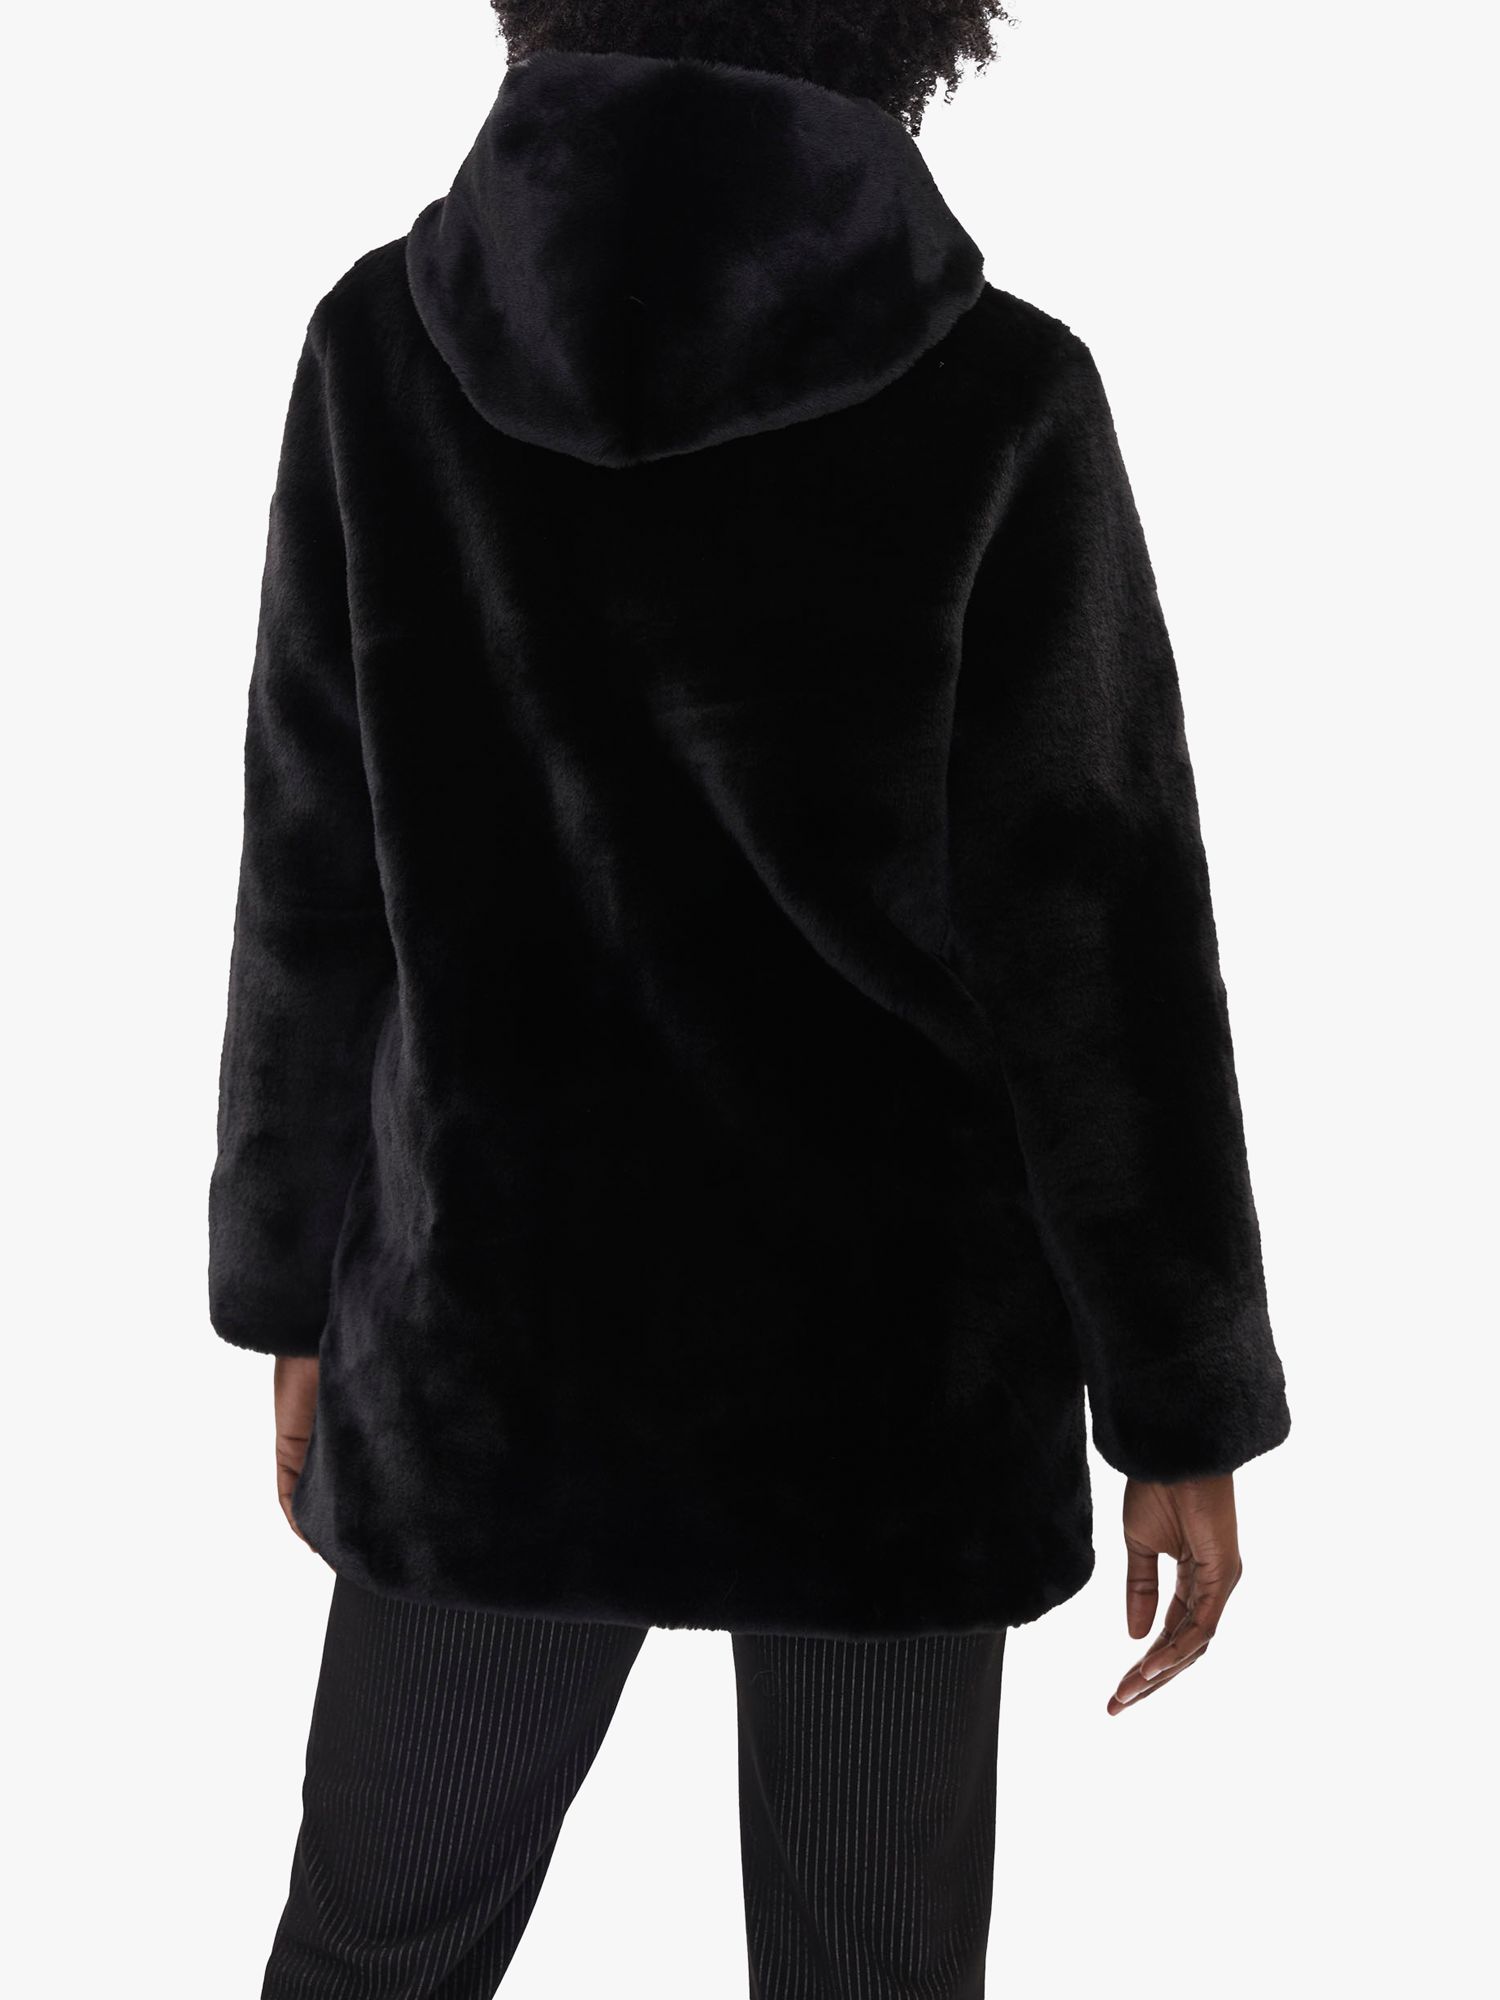 James Lakeland Faux Fur Coat, Black at John Lewis & Partners